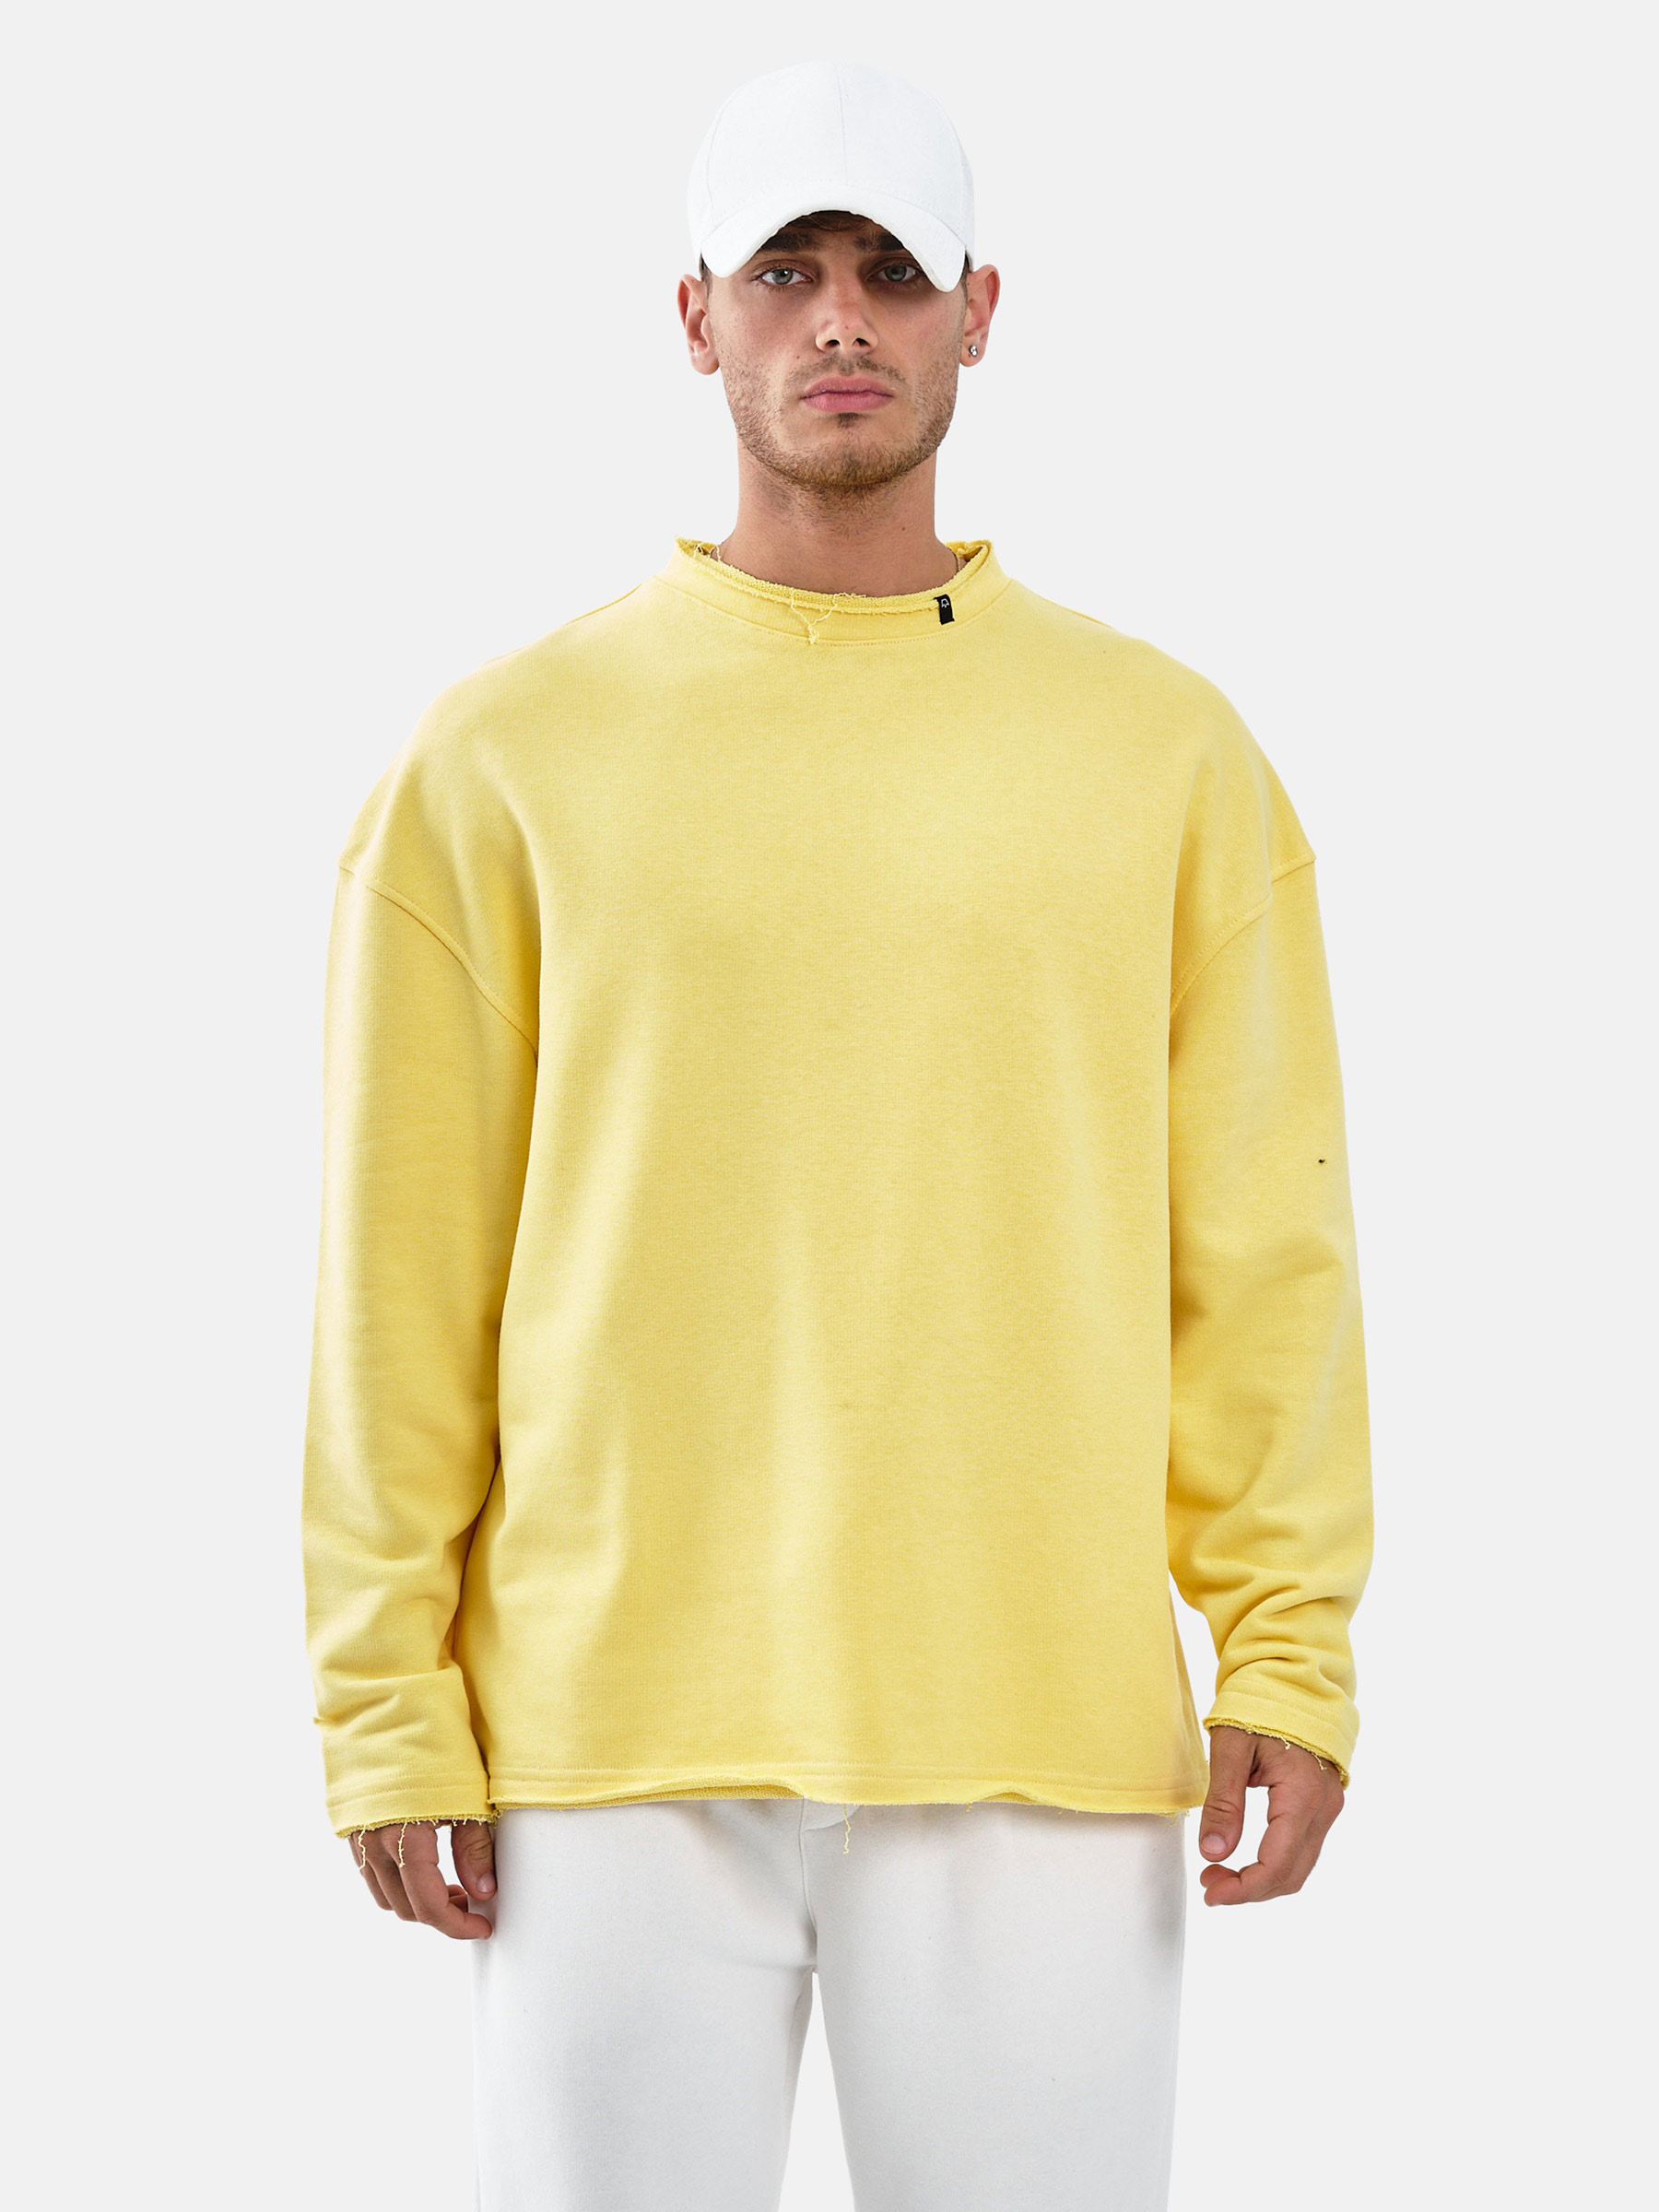 WAM Denim Melvin Yellow Sweater -